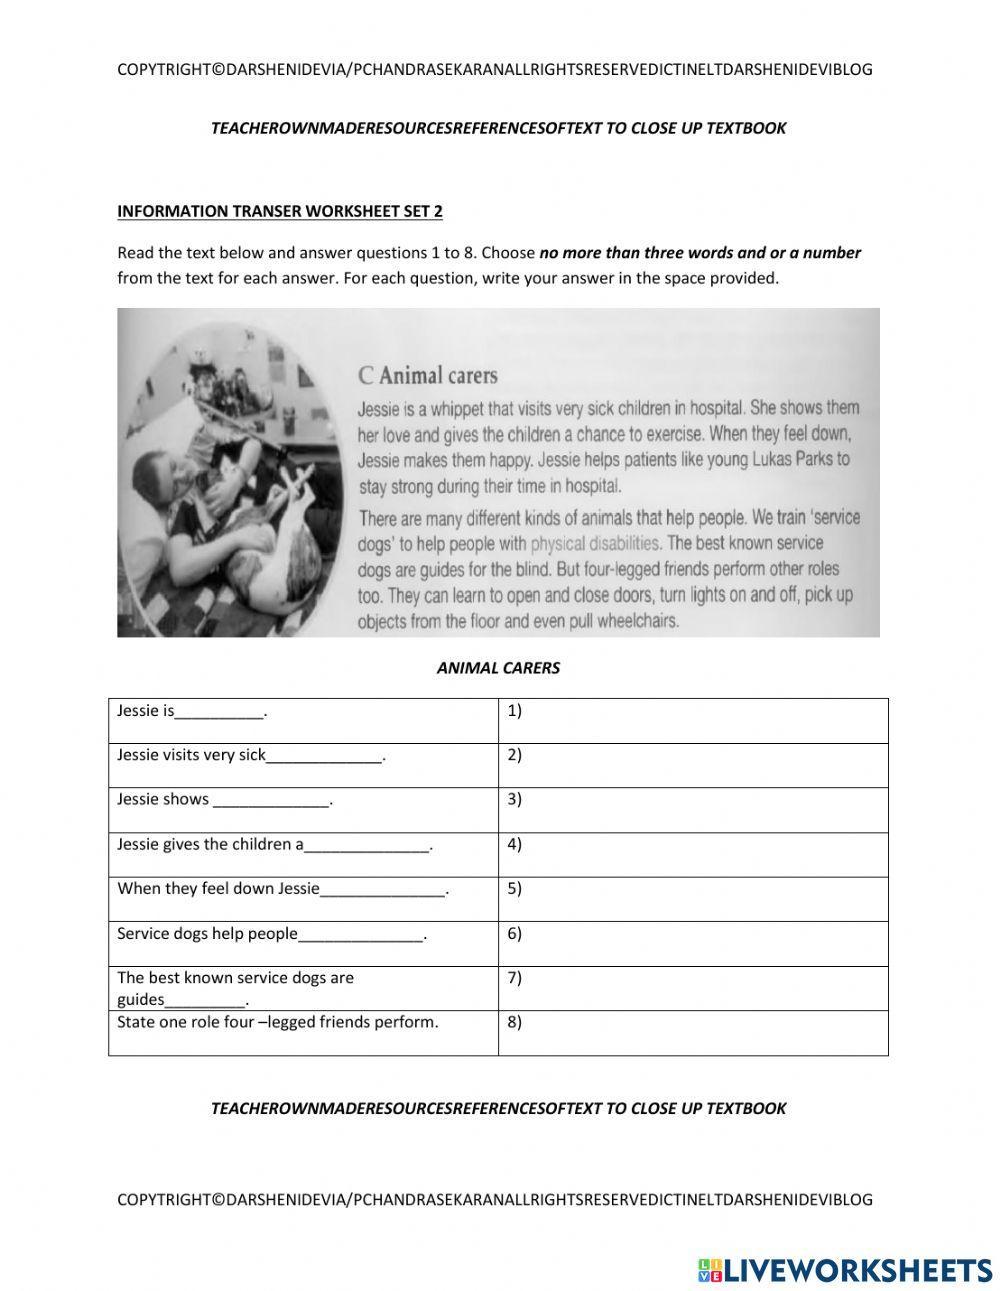 Pt3 part 3 information transfer worksheets 2 sets